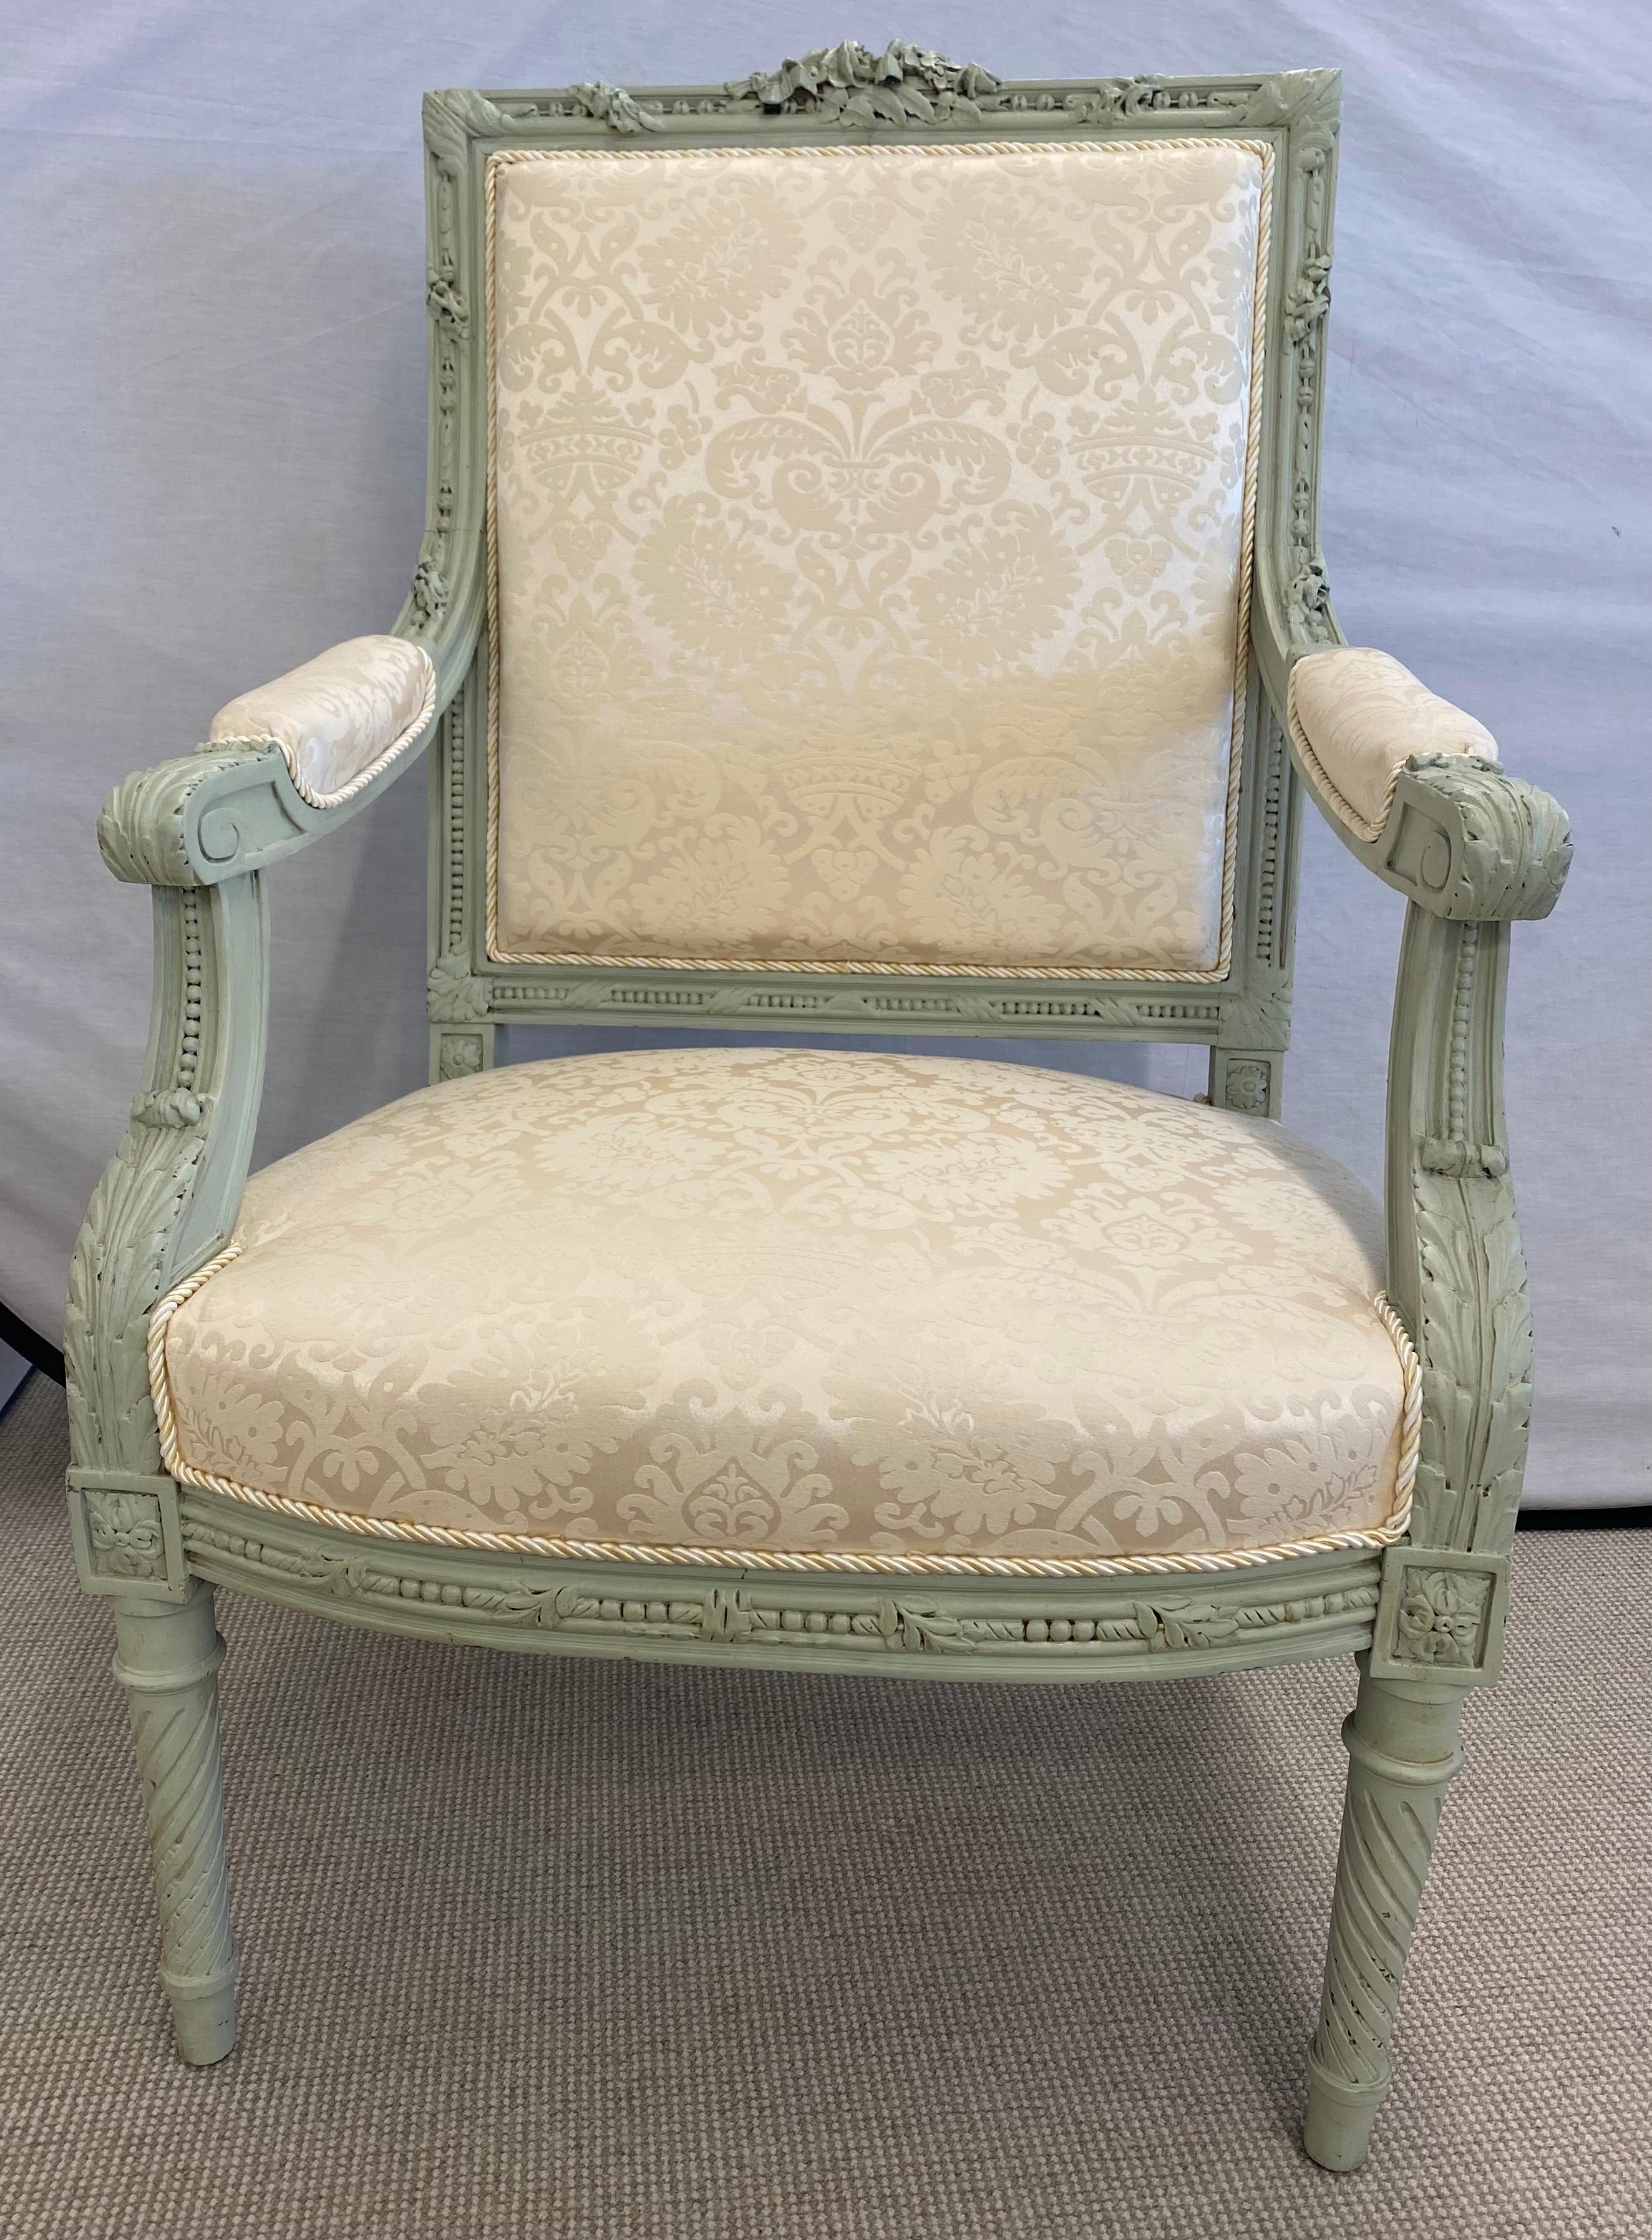 Zwei fein gepolsterte Thron- oder Armstühle im Louis XVI-Stil mit lackierten Rahmen. Jedes hat geschnitzte, gedrehte Beine, die gepolsterte Sitze und Rückenlehnen auf geschnitzten Rahmen tragen. Jeweils in einer feinen sauberen Polsterung.